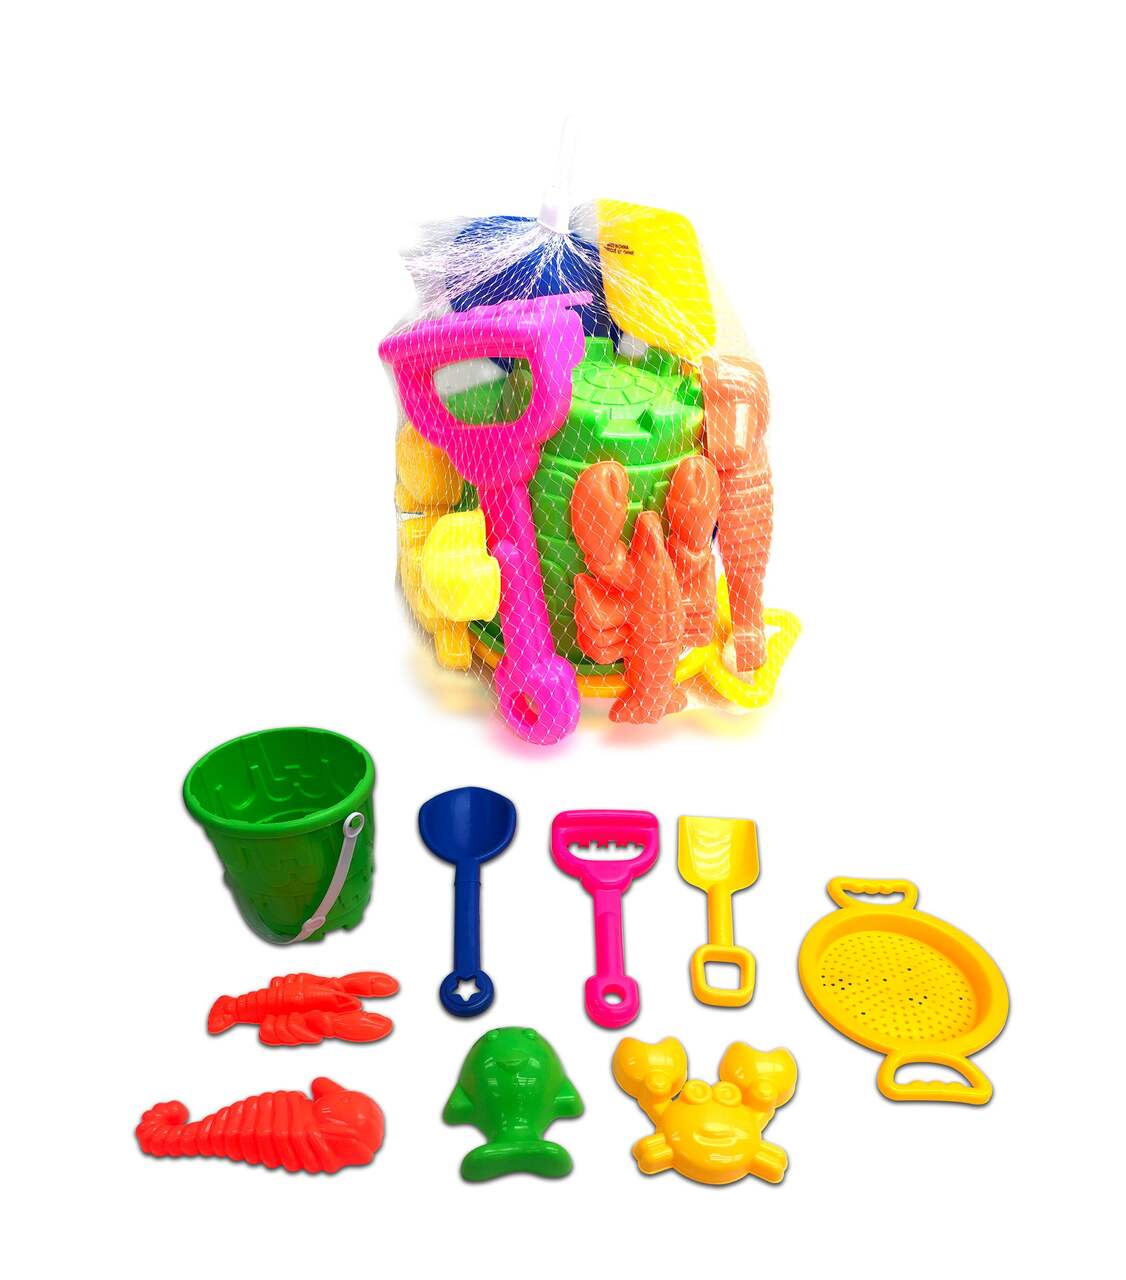 ② Toutes sortes de jouets aquatiques — Jouets